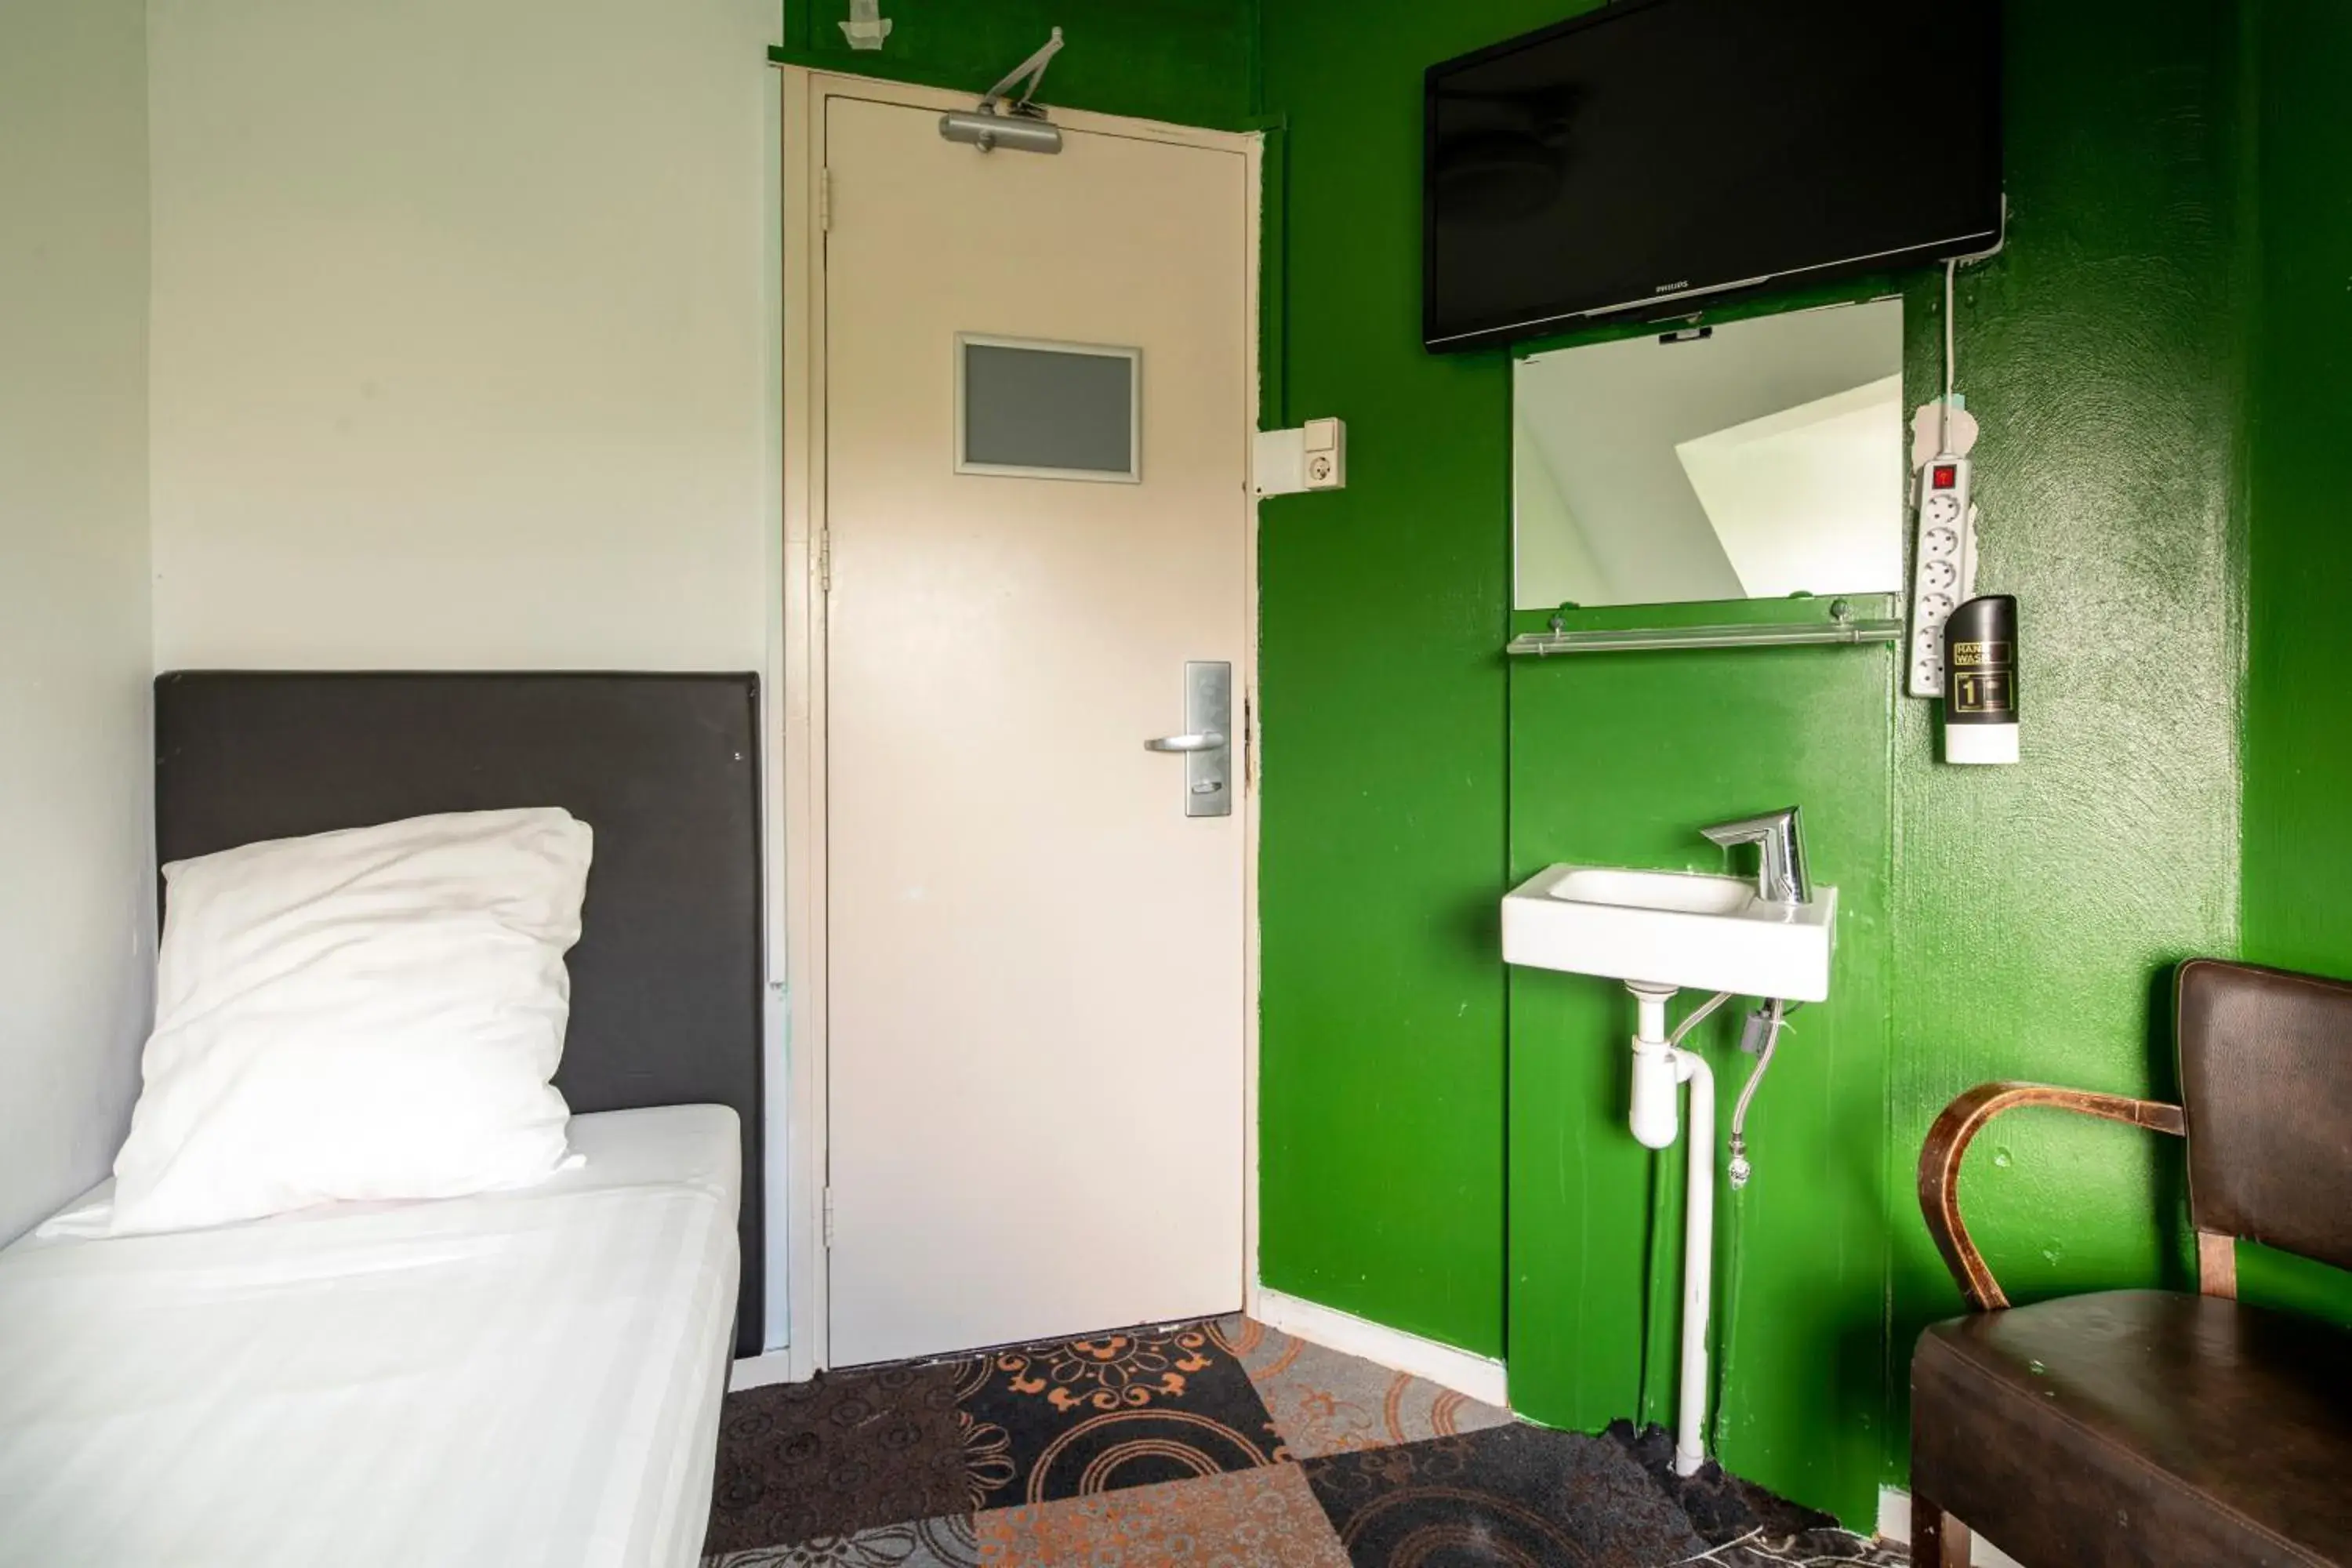 Bed, Bathroom in Princess Hotel Leidse Square